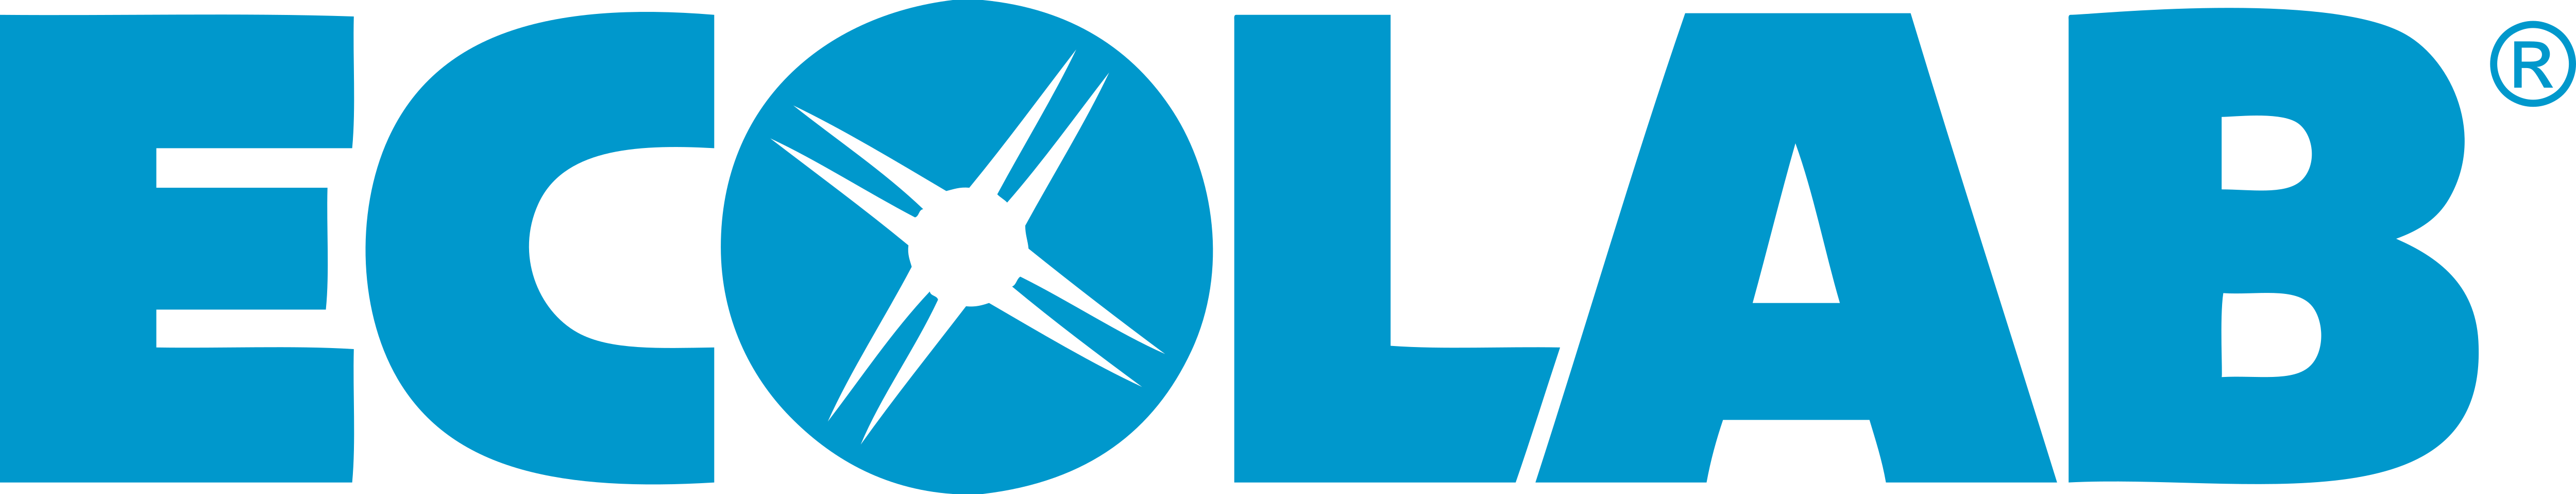 Ecolab – Logos Download